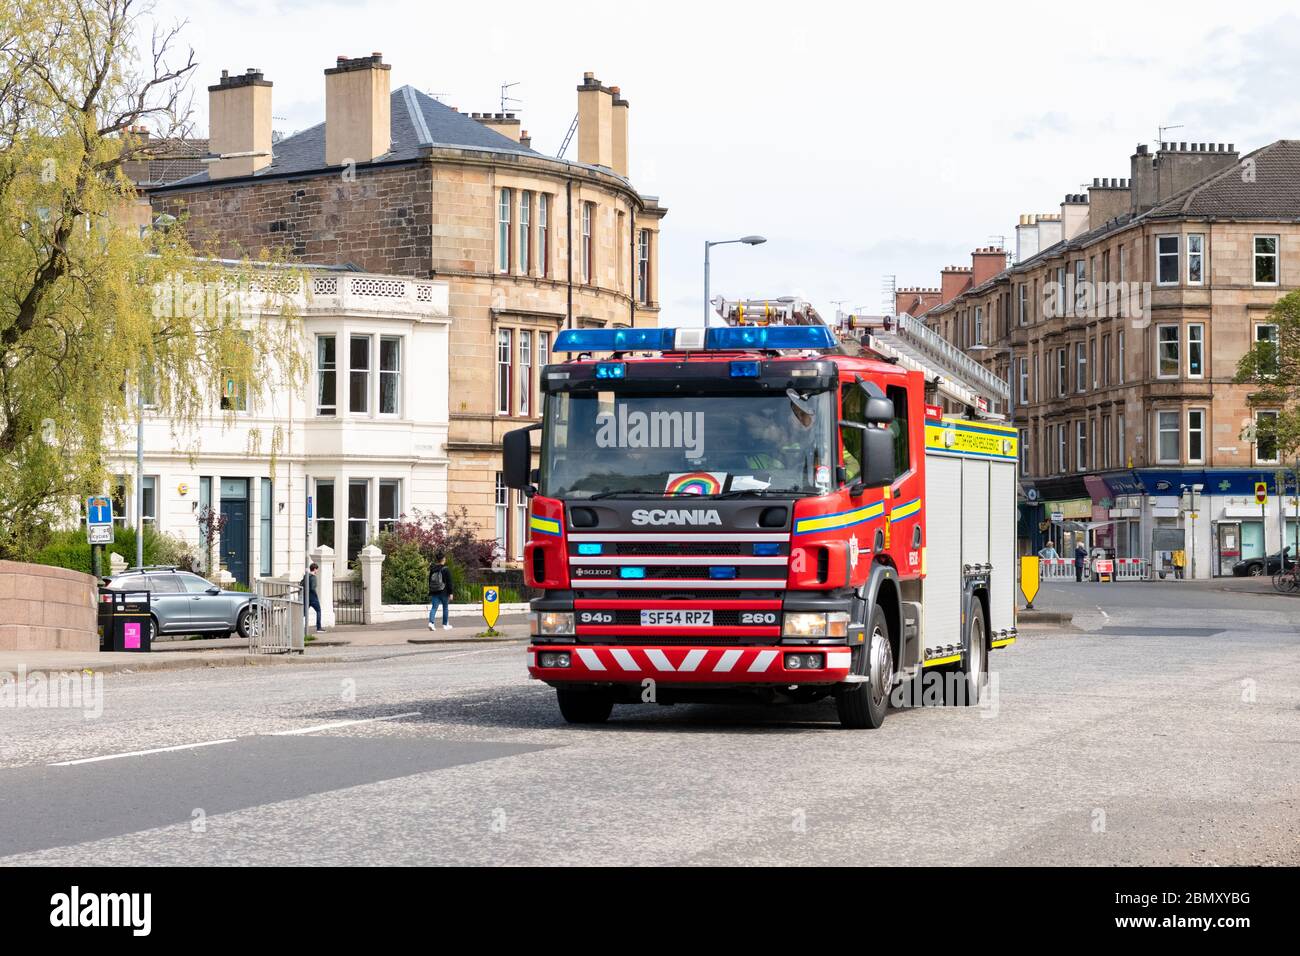 Motore antincendio con luci blu che rispondono a un'emergenza durante il blocco dei coronavirus, Glasgow, Scozia, Regno Unito - con immagine dell'arcobaleno sul parabrezza Foto Stock